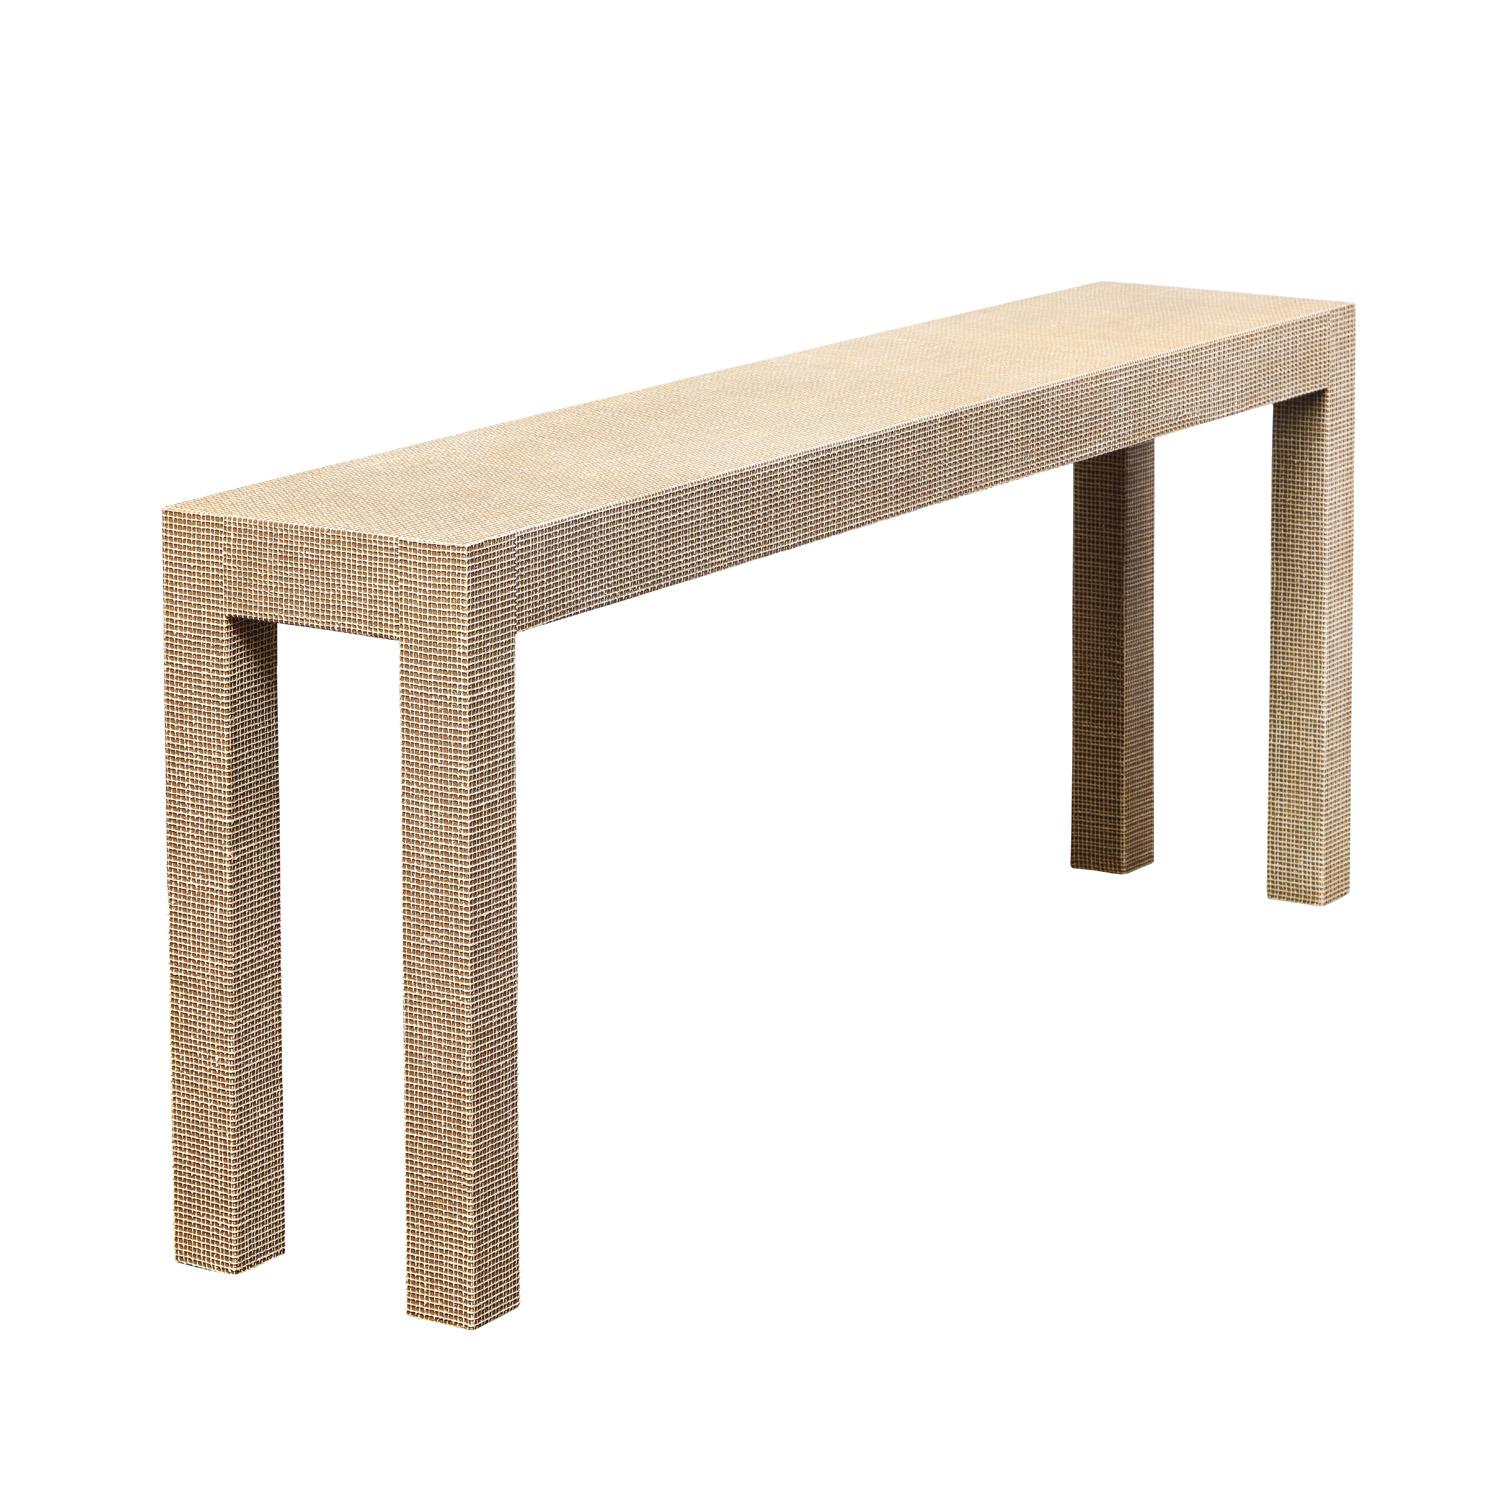 Table console sur mesure à pieds carrés, recouverte d'un lourd lin quadrillé et d'une laque deux tons - conçue par Evan Lobel pour Lobel Originals. Il peut être fabriqué sur commande dans n'importe quelle taille. Il peut également être réalisé sous